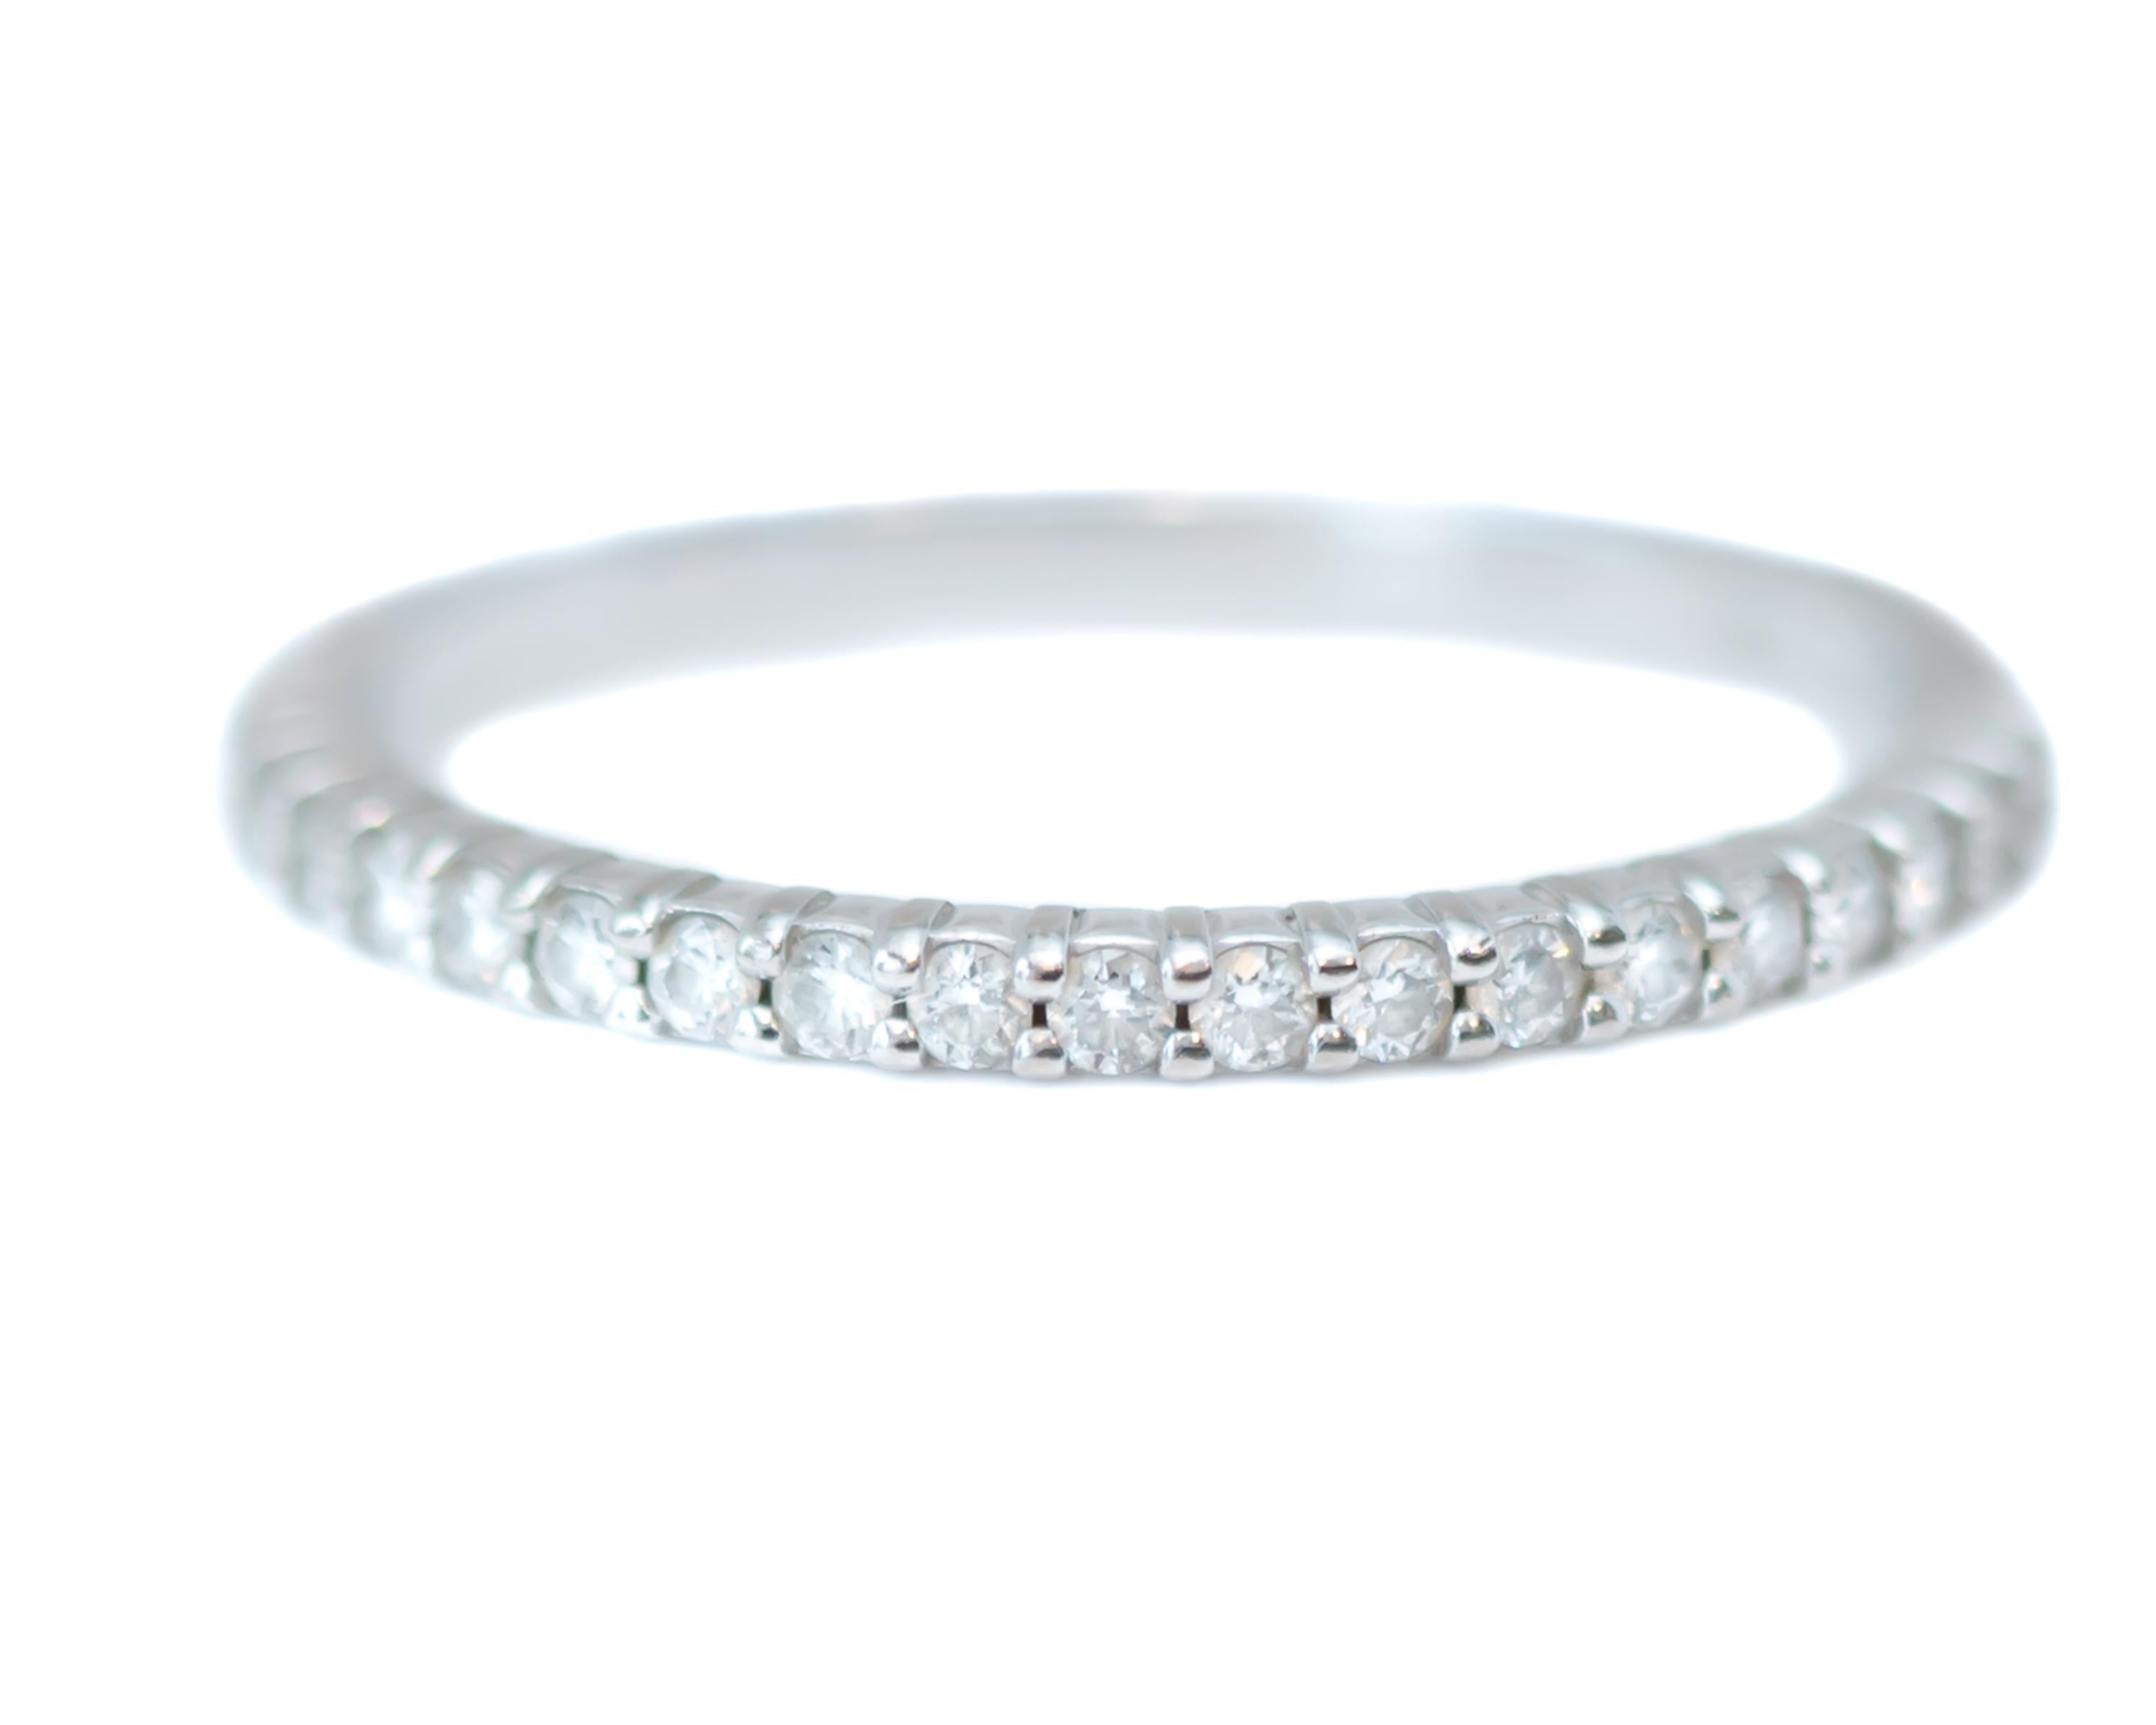 Bracelet d'éternité en diamant - Or blanc 18 carats, Diamants

Caractéristiques :
0.40 carats au total Diamants sertis en taille de précision
or blanc 18 carats
La largeur de la bande mesure 1,75 millimètre
Convient à une taille 6.25, peut être